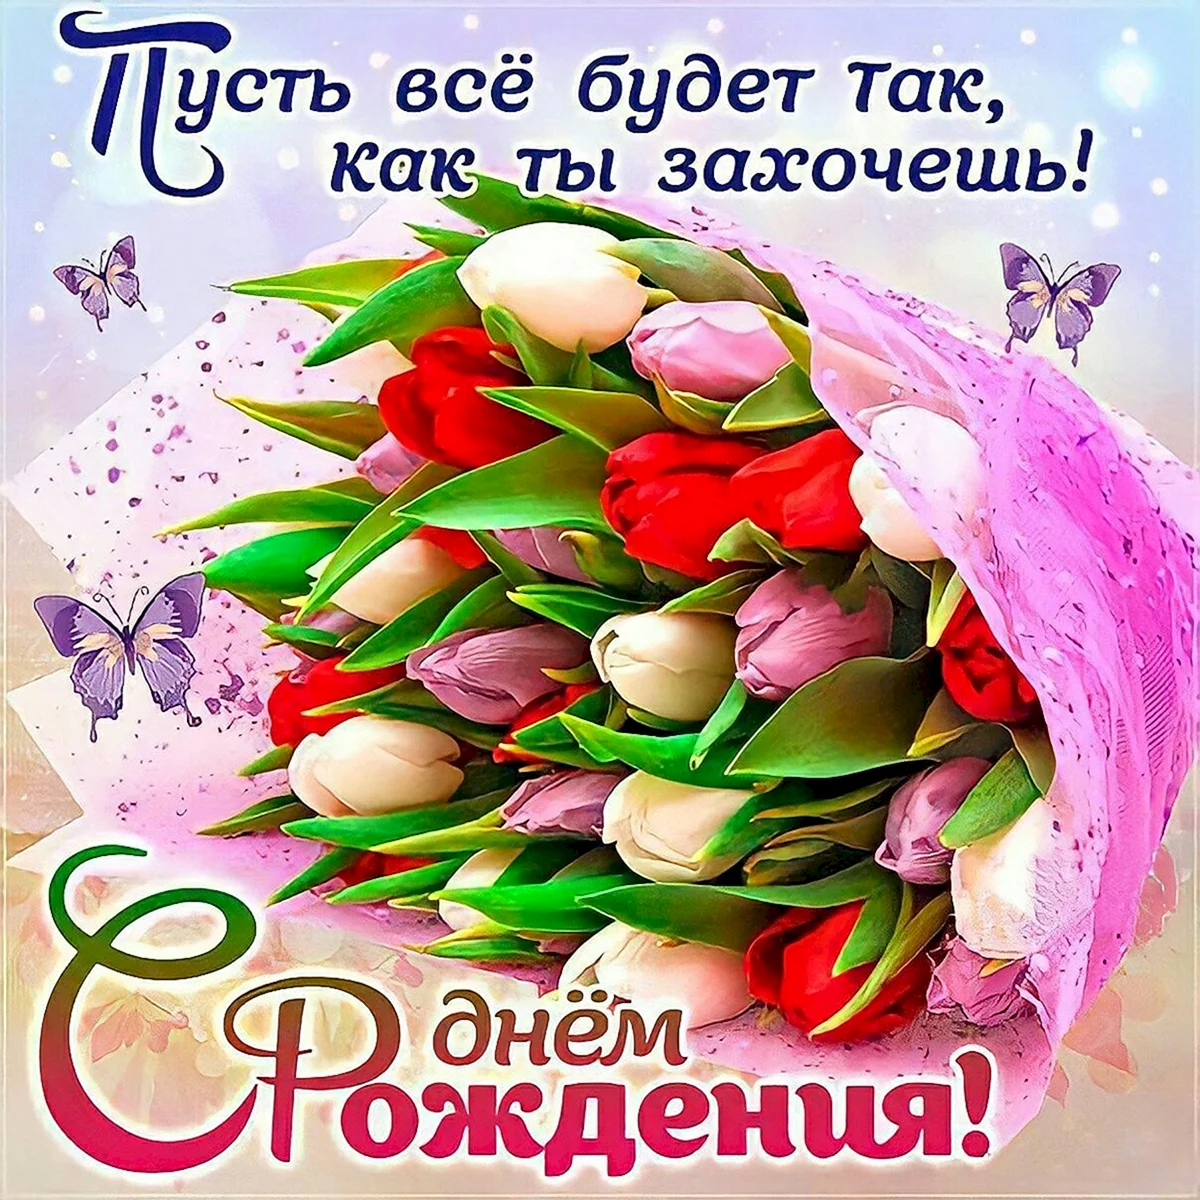 Поздравления с днем рождения цветы